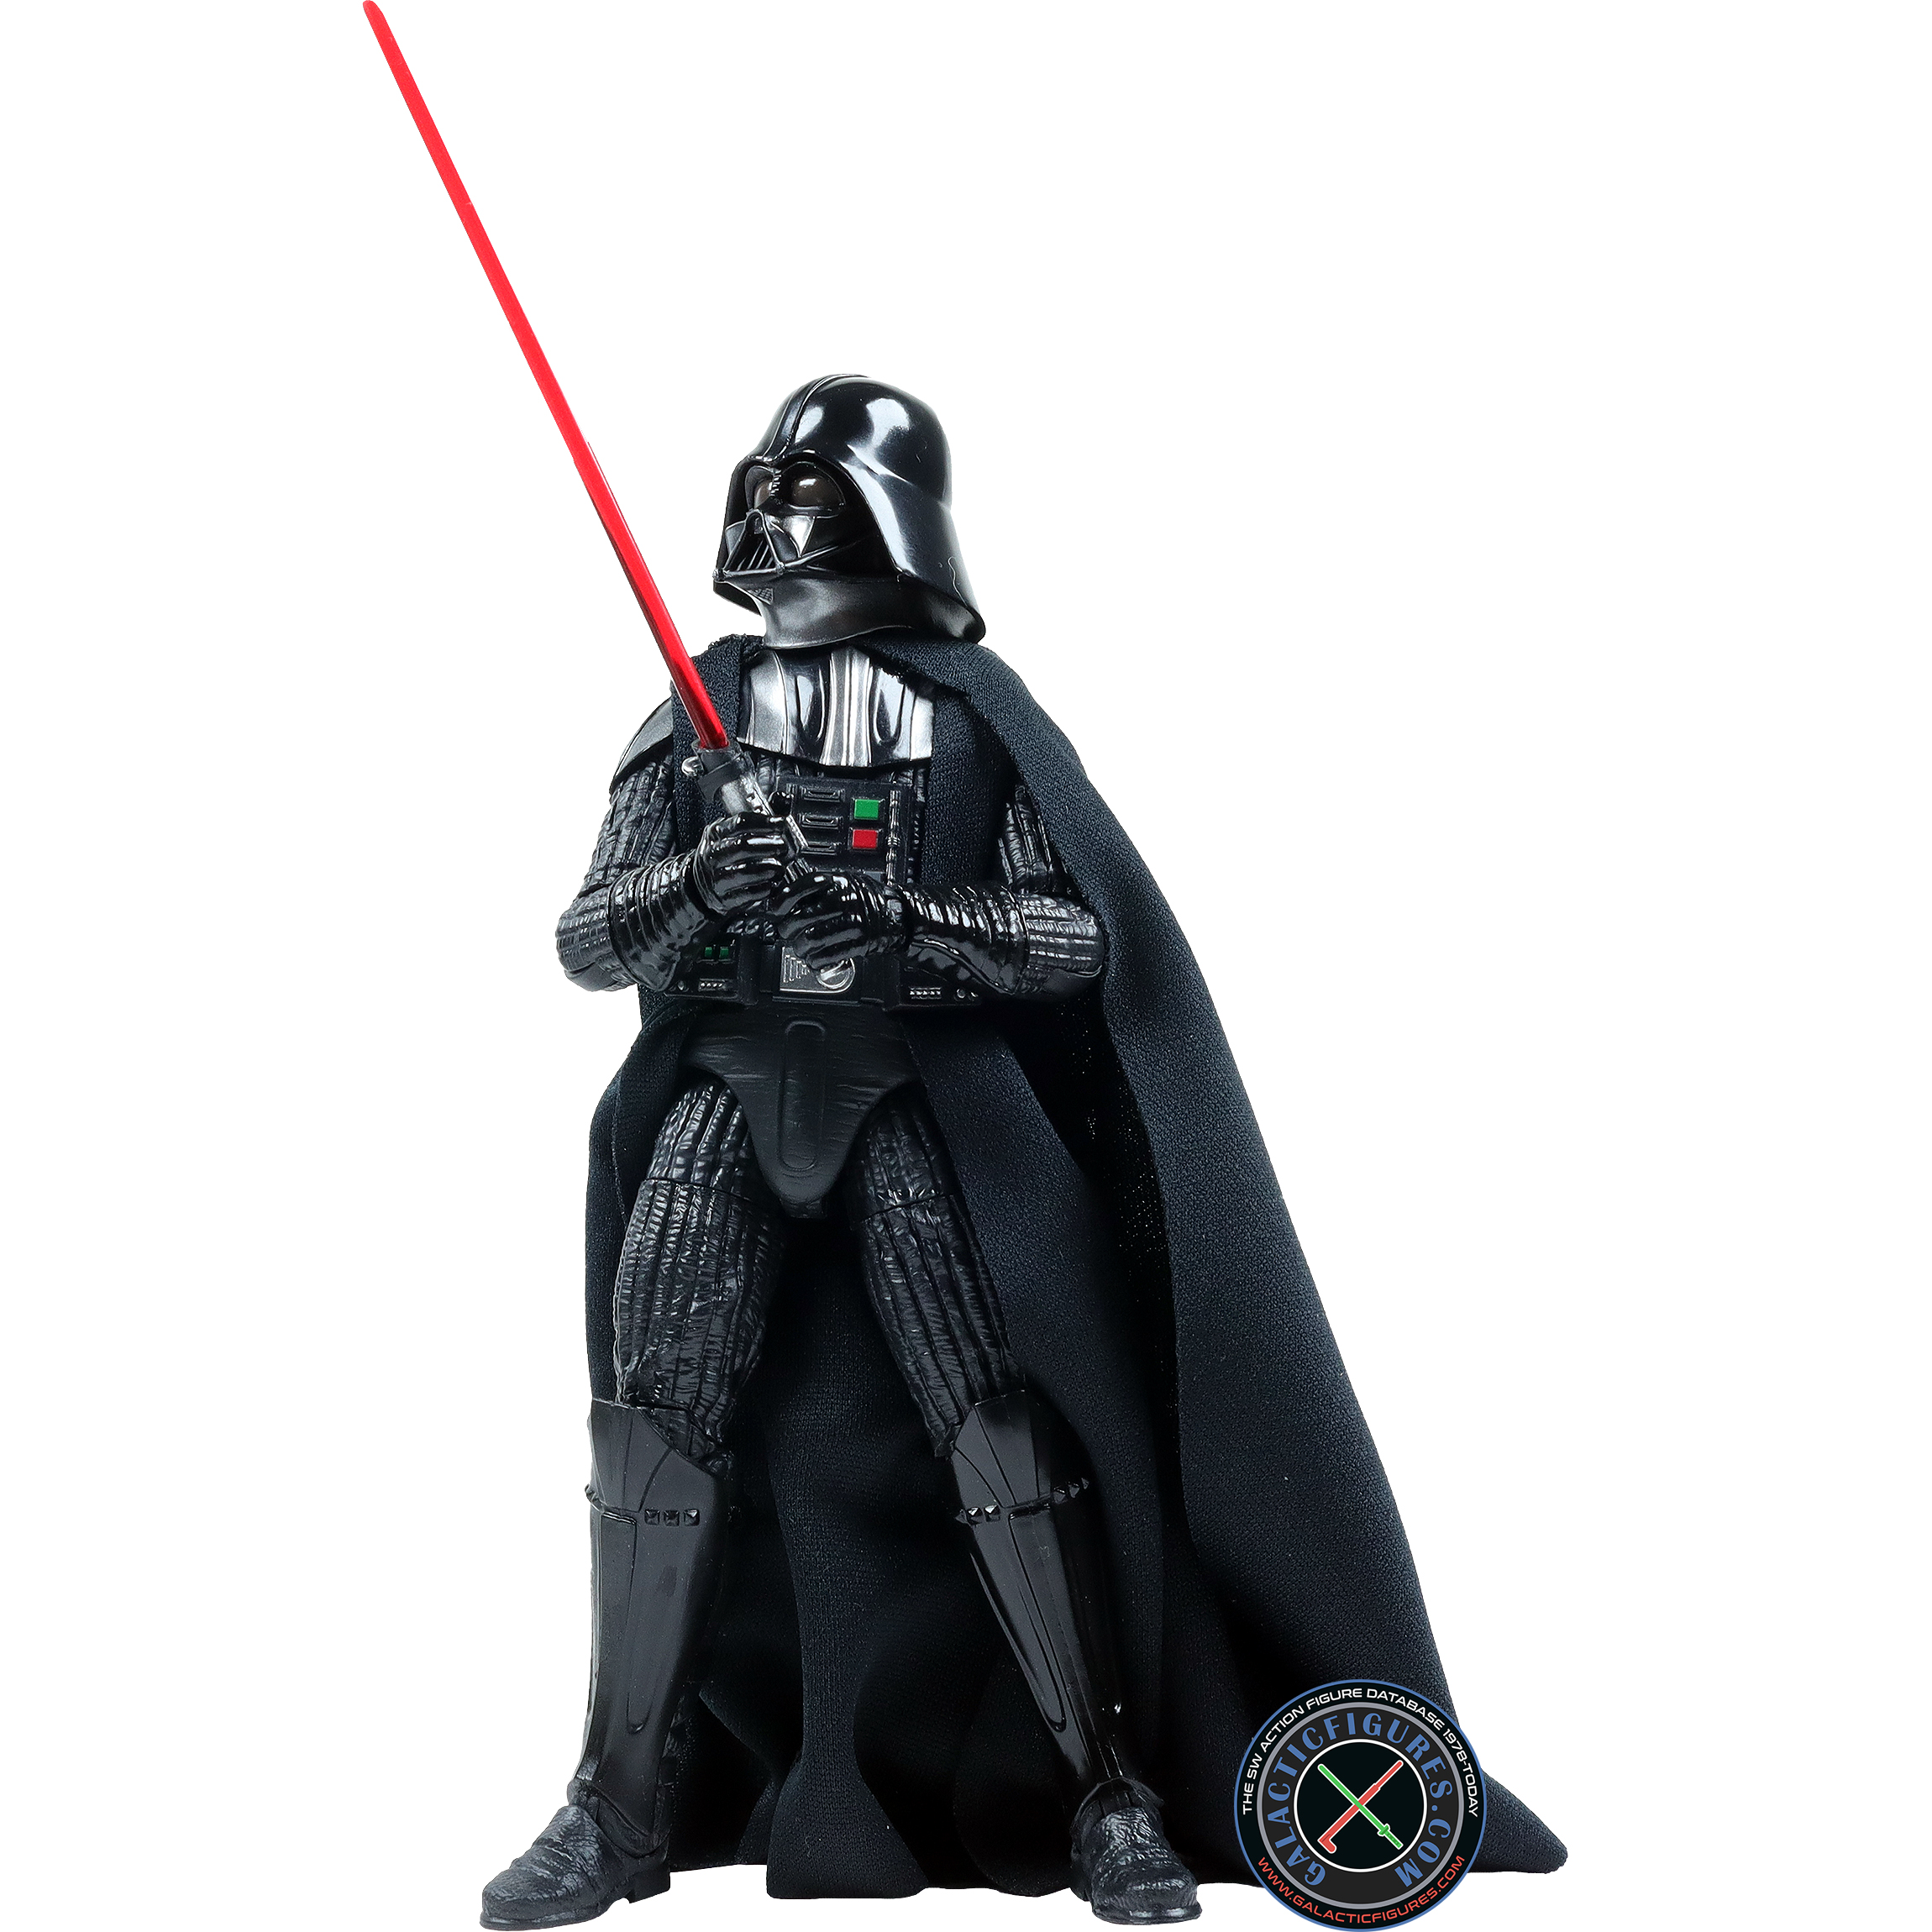 Darth Vader A New Hope